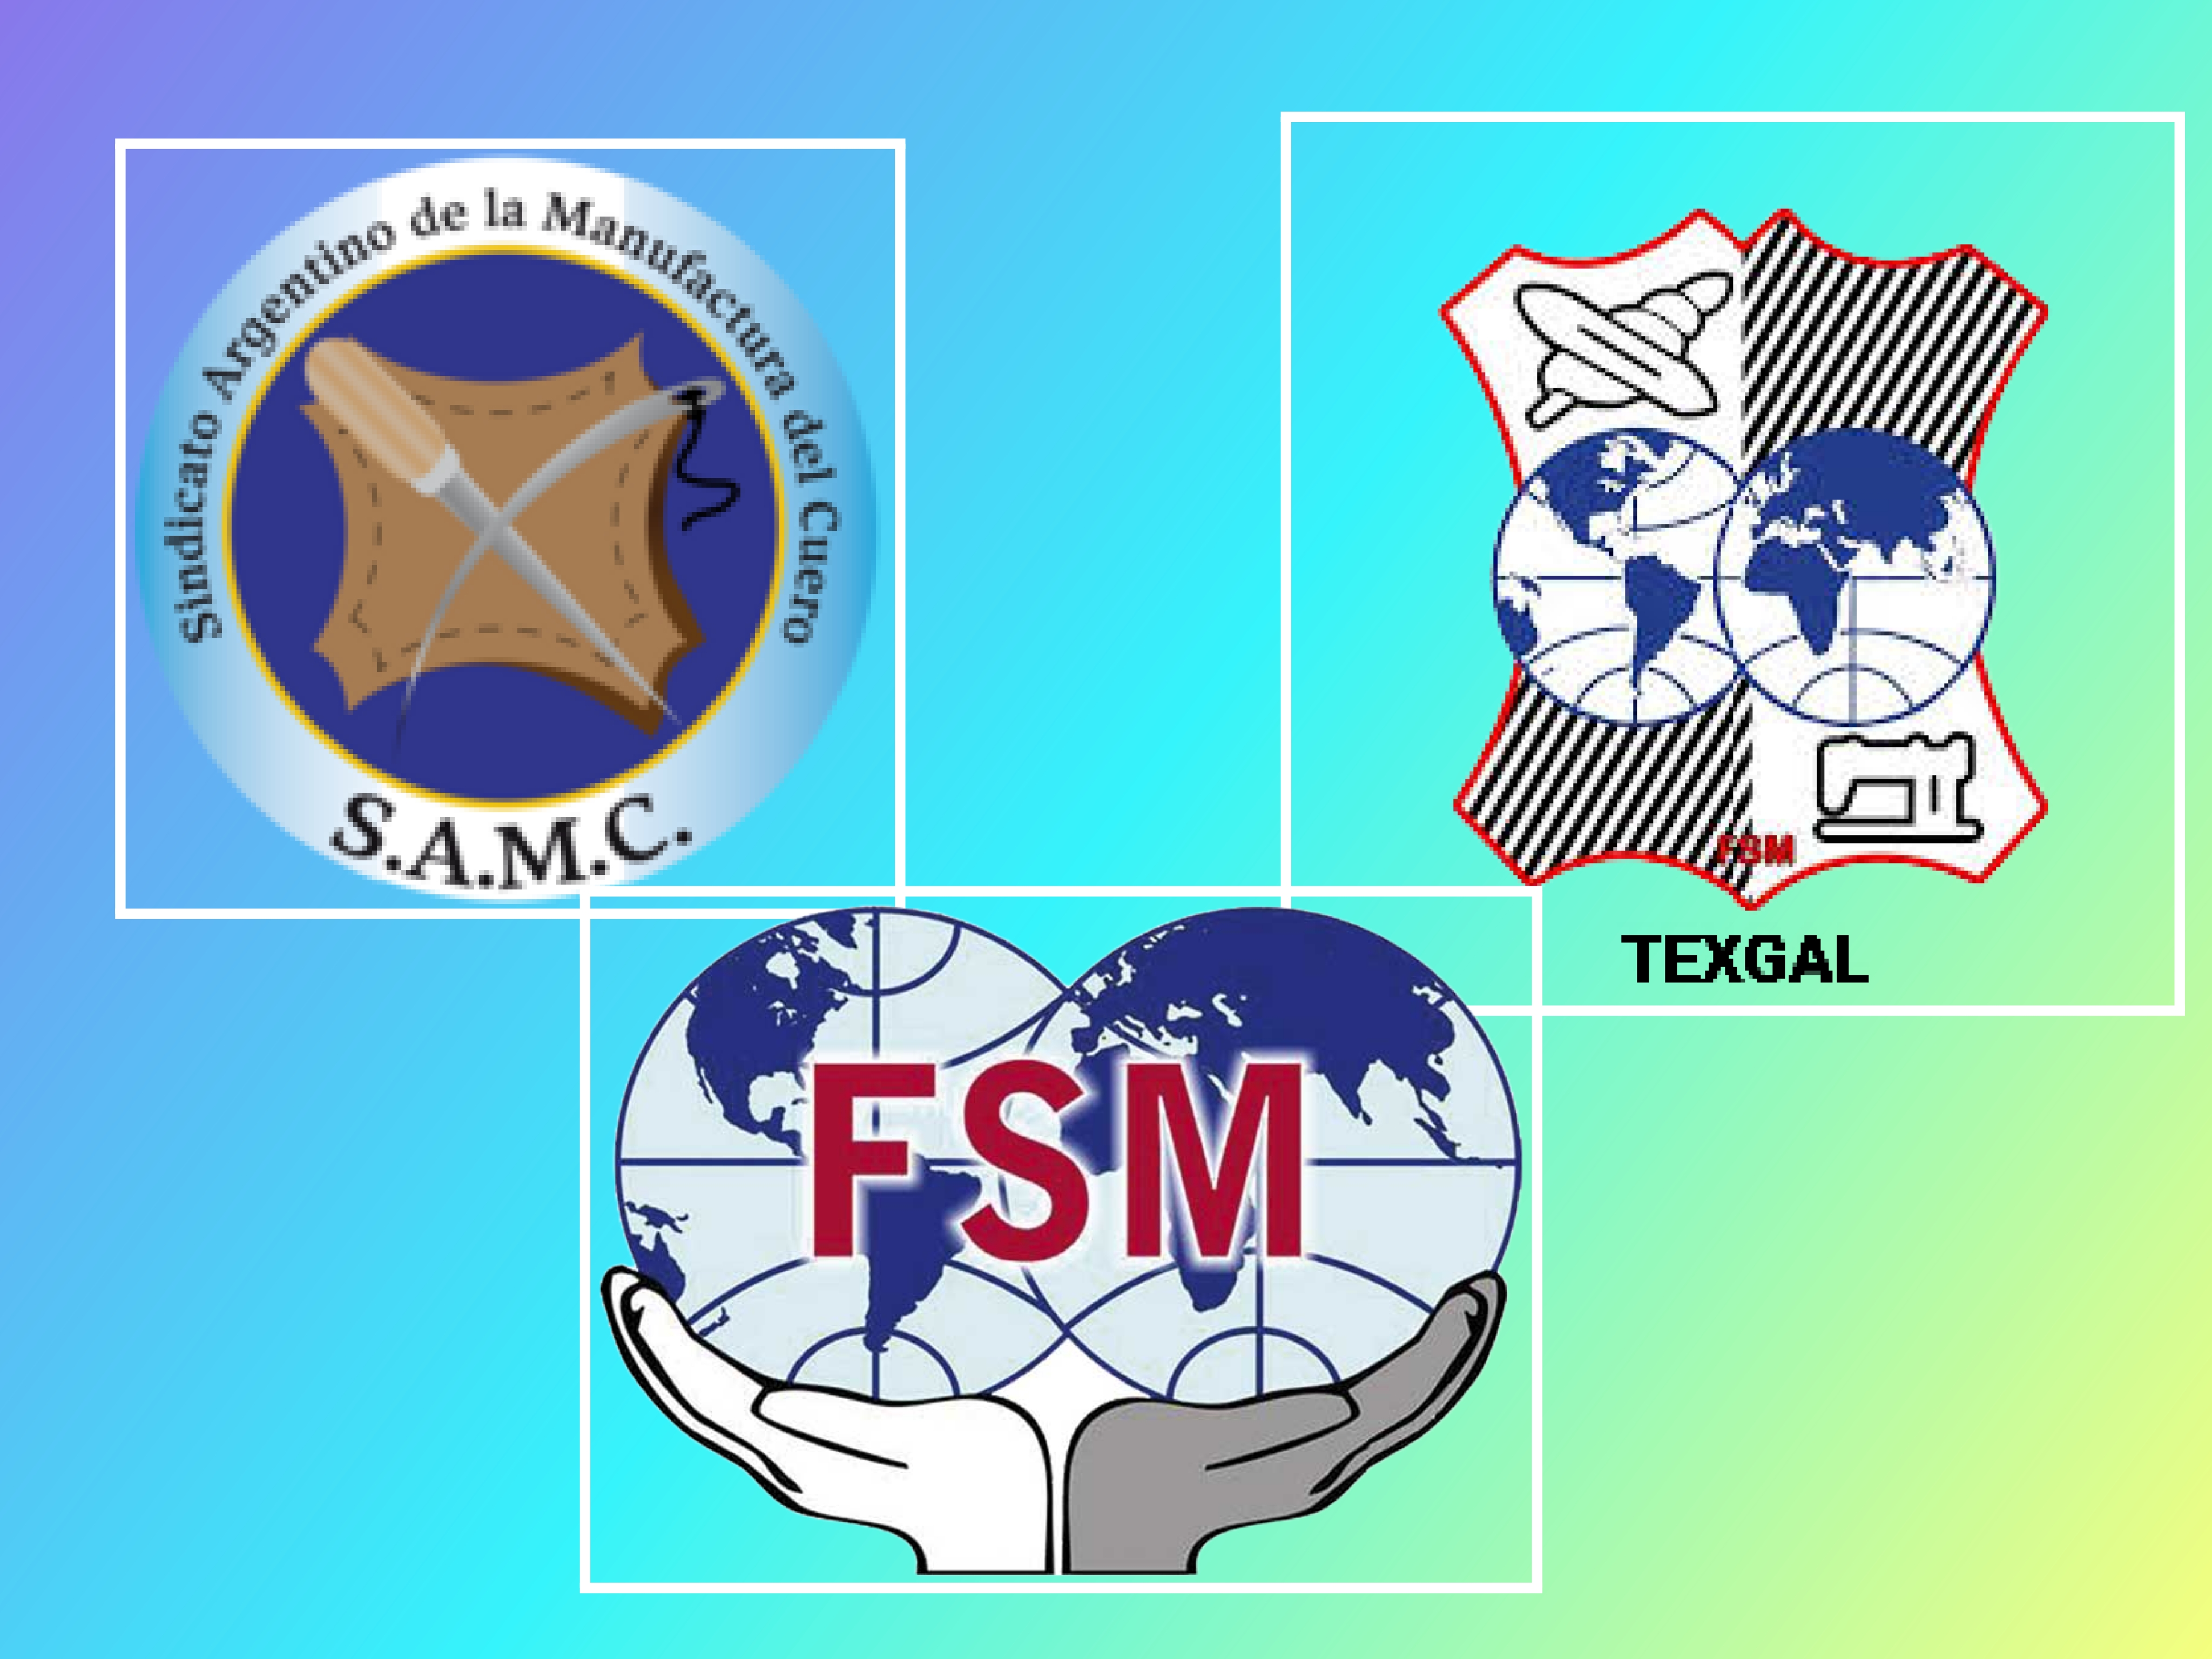 S.A.M.C (Argentina) muestra su apoyo y solidaridad con el STM y la plantilla de Ford Almussafes.